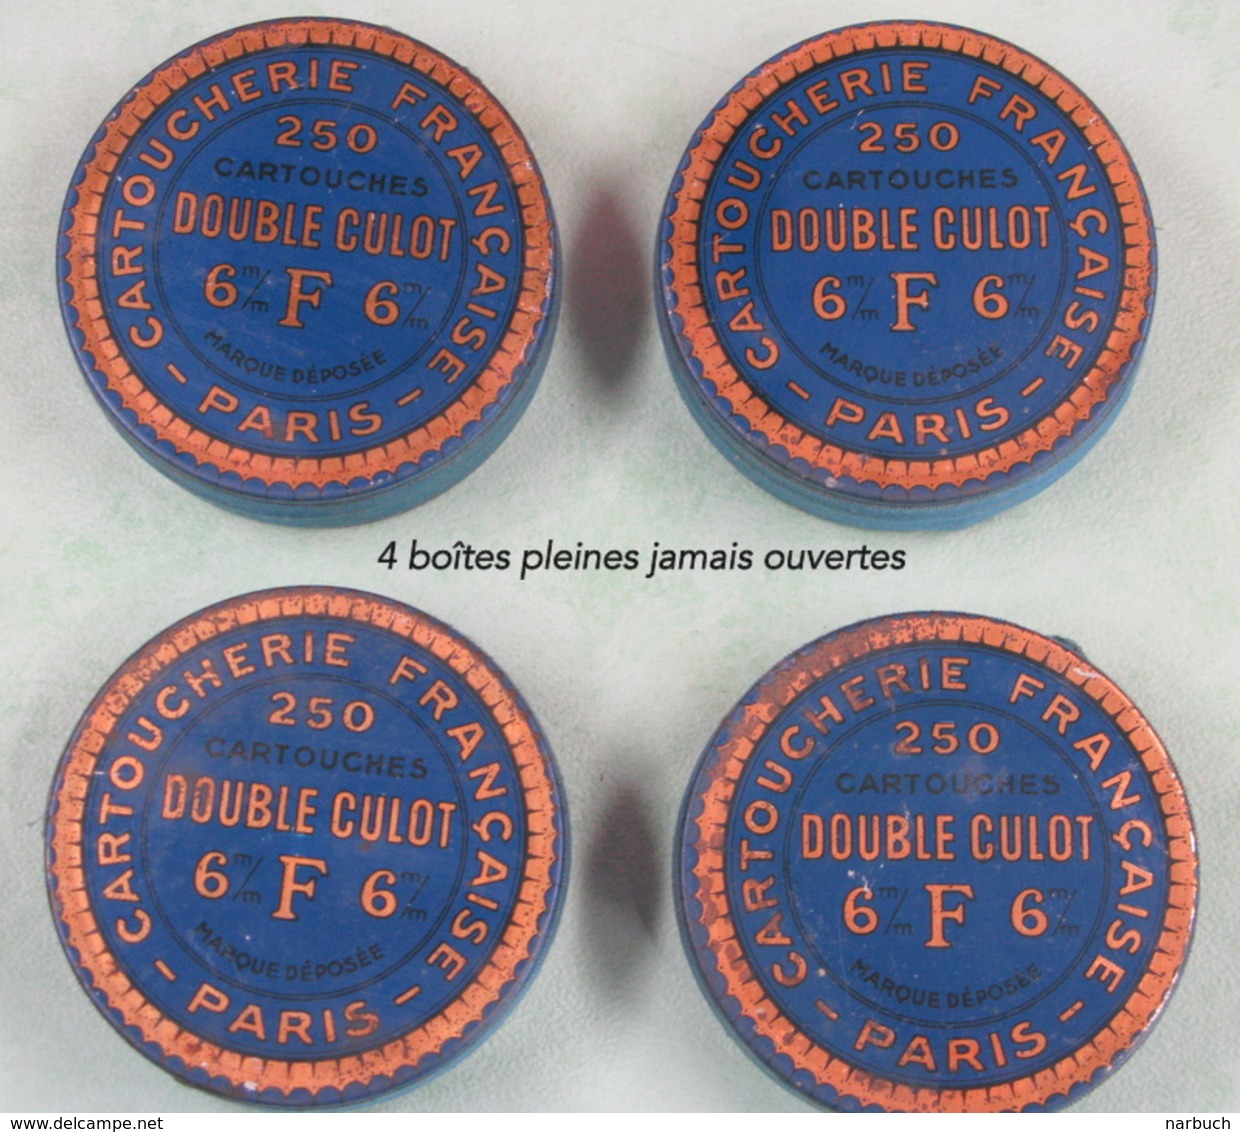 Boite De Cartouches 6 Mm Double Culot, Cartoucherie Française Paris Lot De 4 + 2 Quasi Vide - Armes Neutralisées